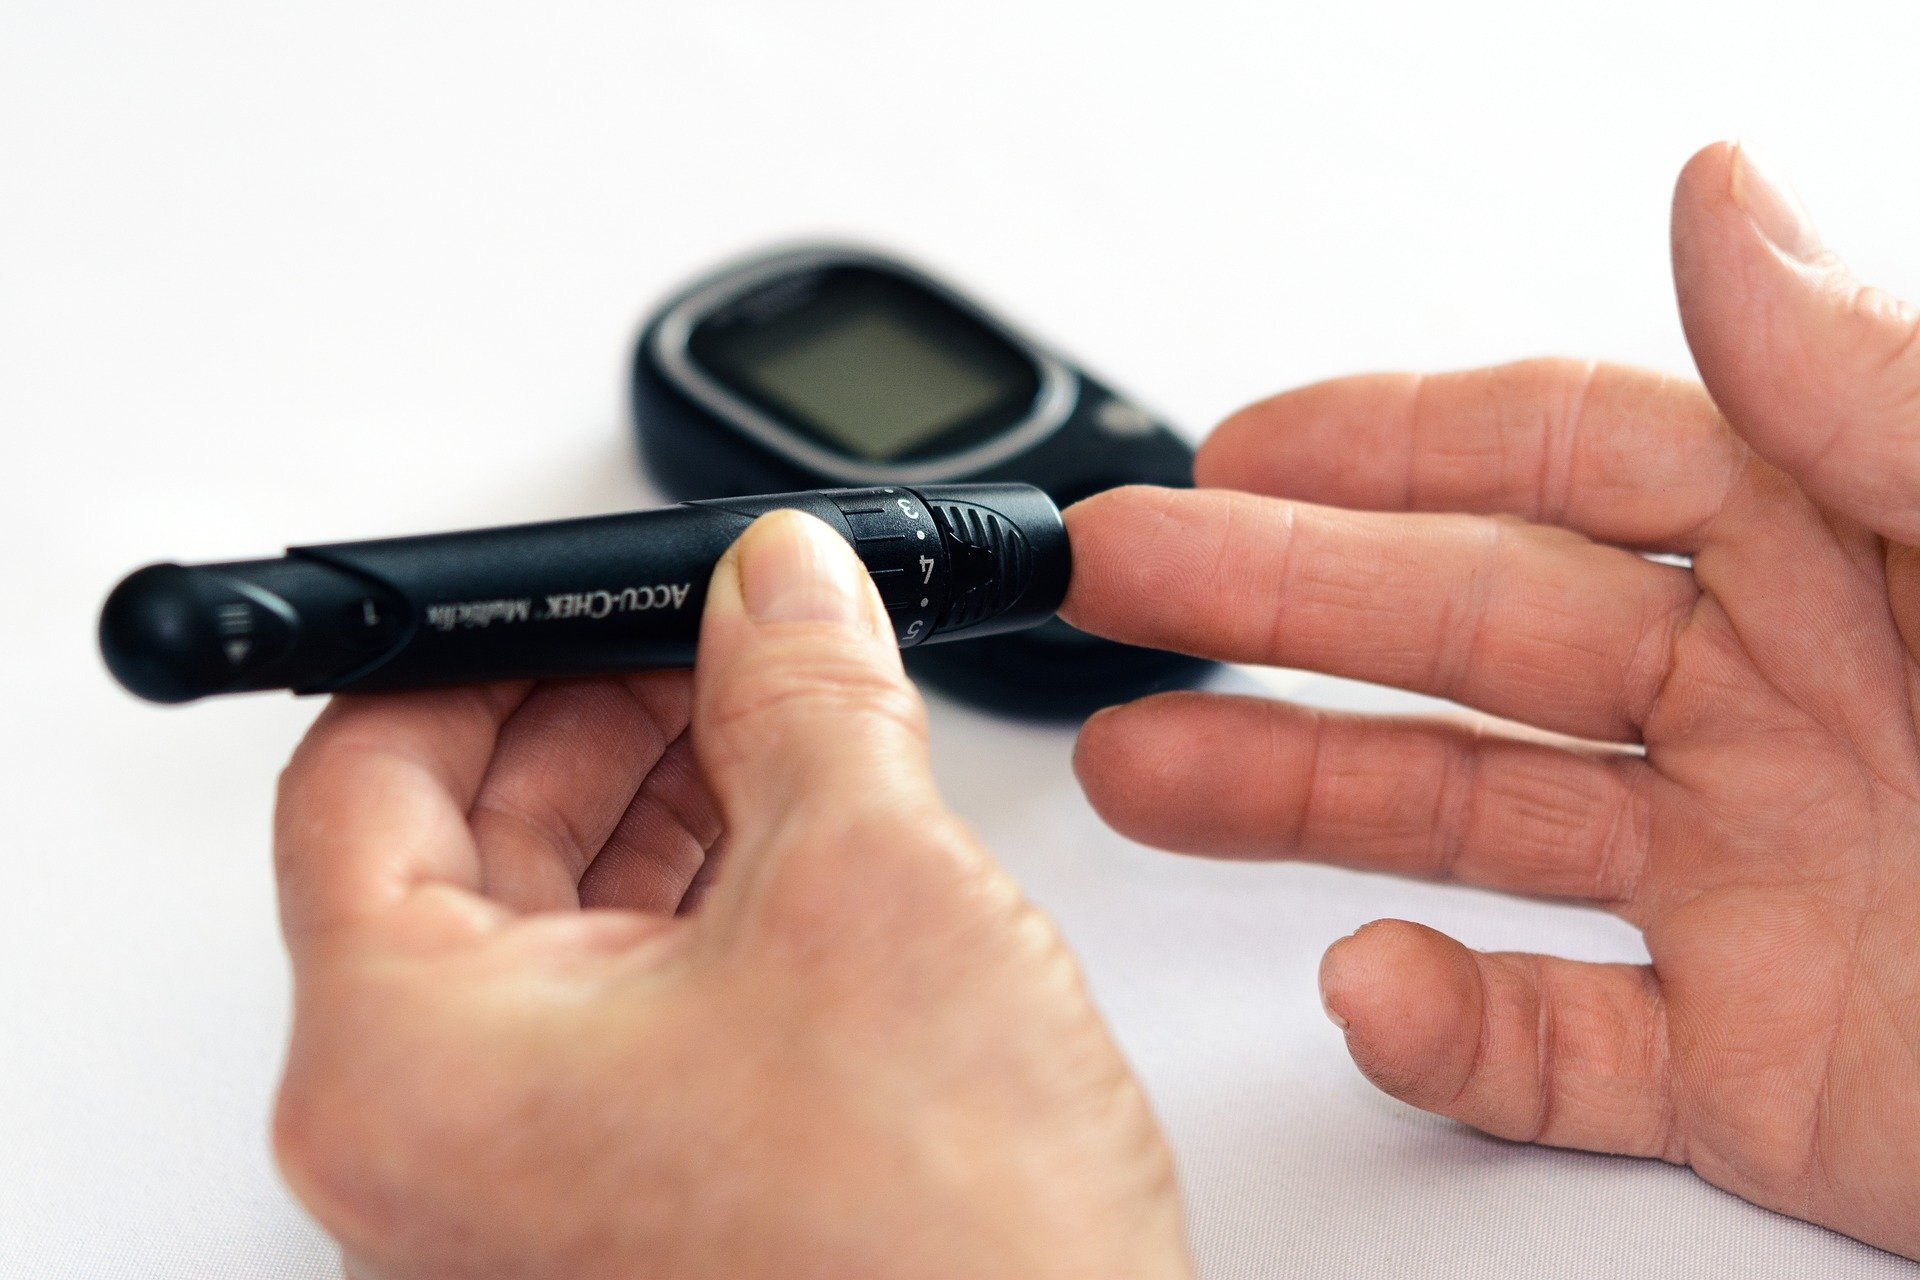 Hai il diabete? Controlla con quale frequenza dovresti monitorare i livelli di glucosio nel sangue!